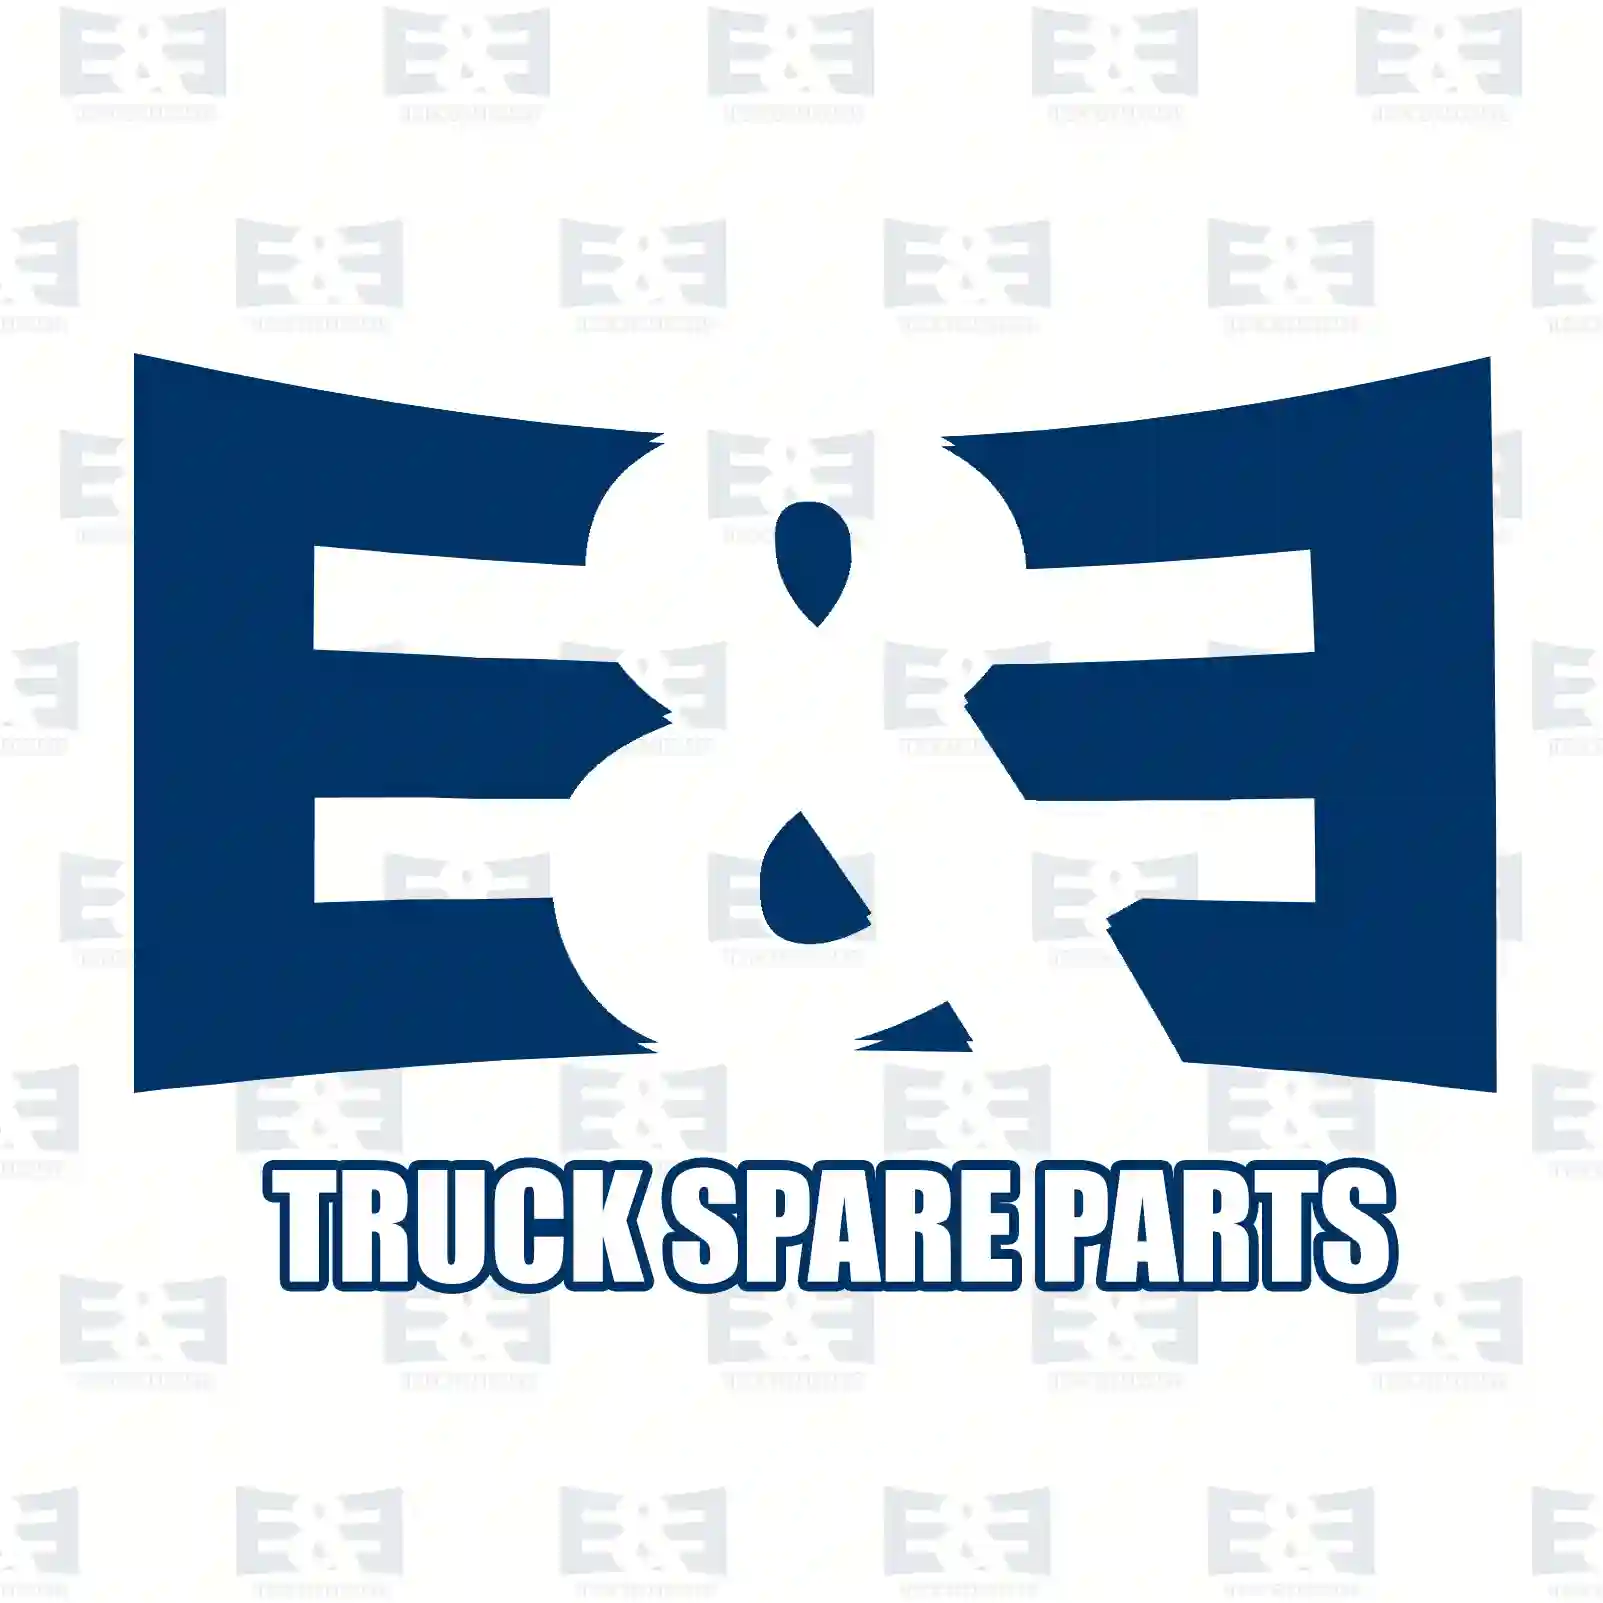 Service kit, filter - L, 2E2206310, 1944131, 2241819 ||  2E2206310 E&E Truck Spare Parts | Truck Spare Parts, Auotomotive Spare Parts Service kit, filter - L, 2E2206310, 1944131, 2241819 ||  2E2206310 E&E Truck Spare Parts | Truck Spare Parts, Auotomotive Spare Parts